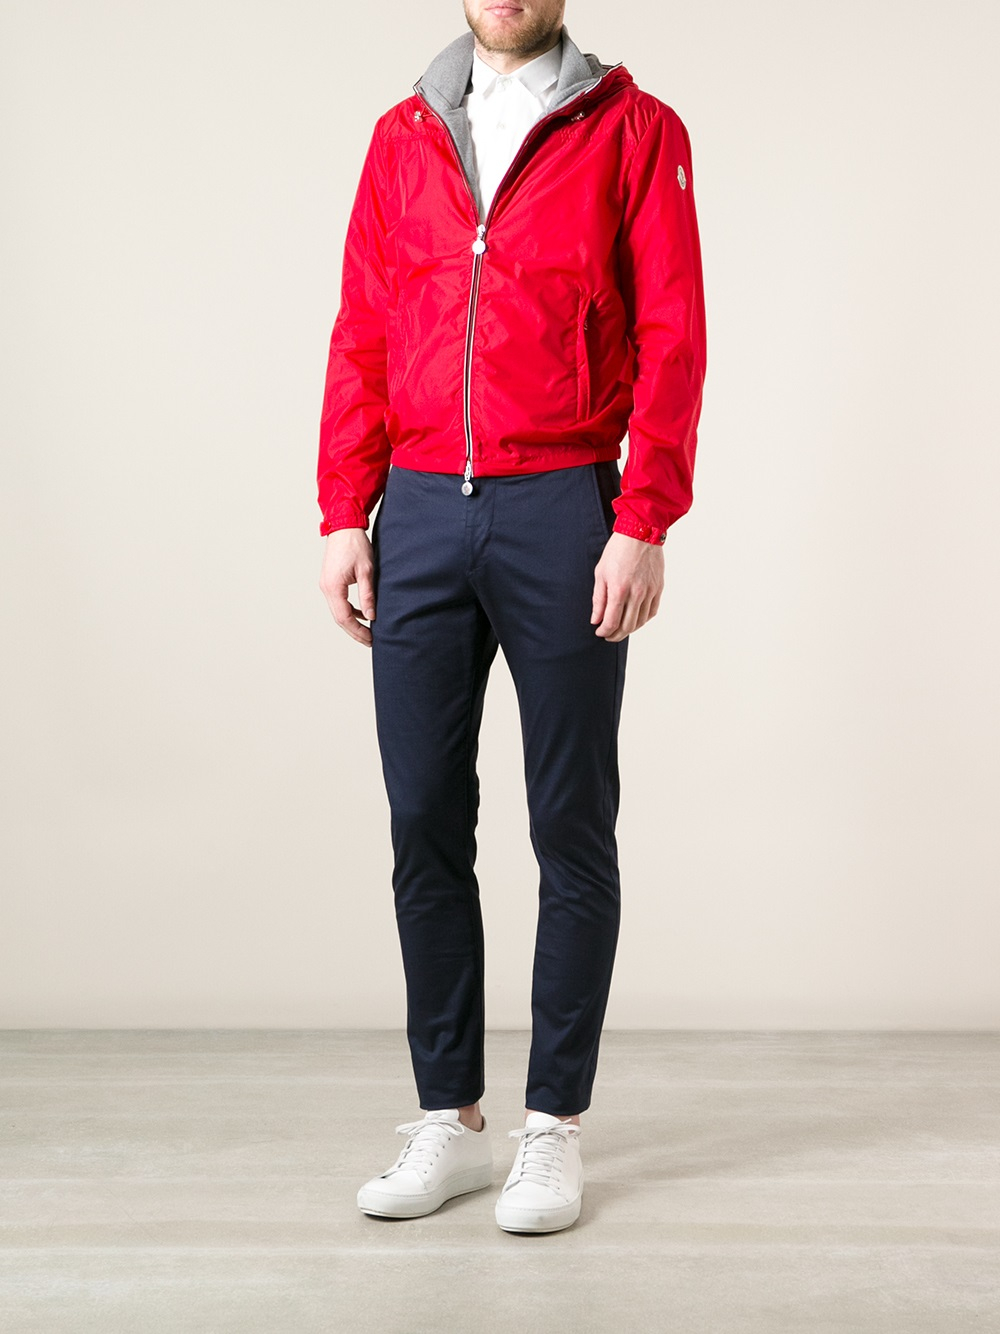 Moncler Urville Jacket in Red for Men - Lyst